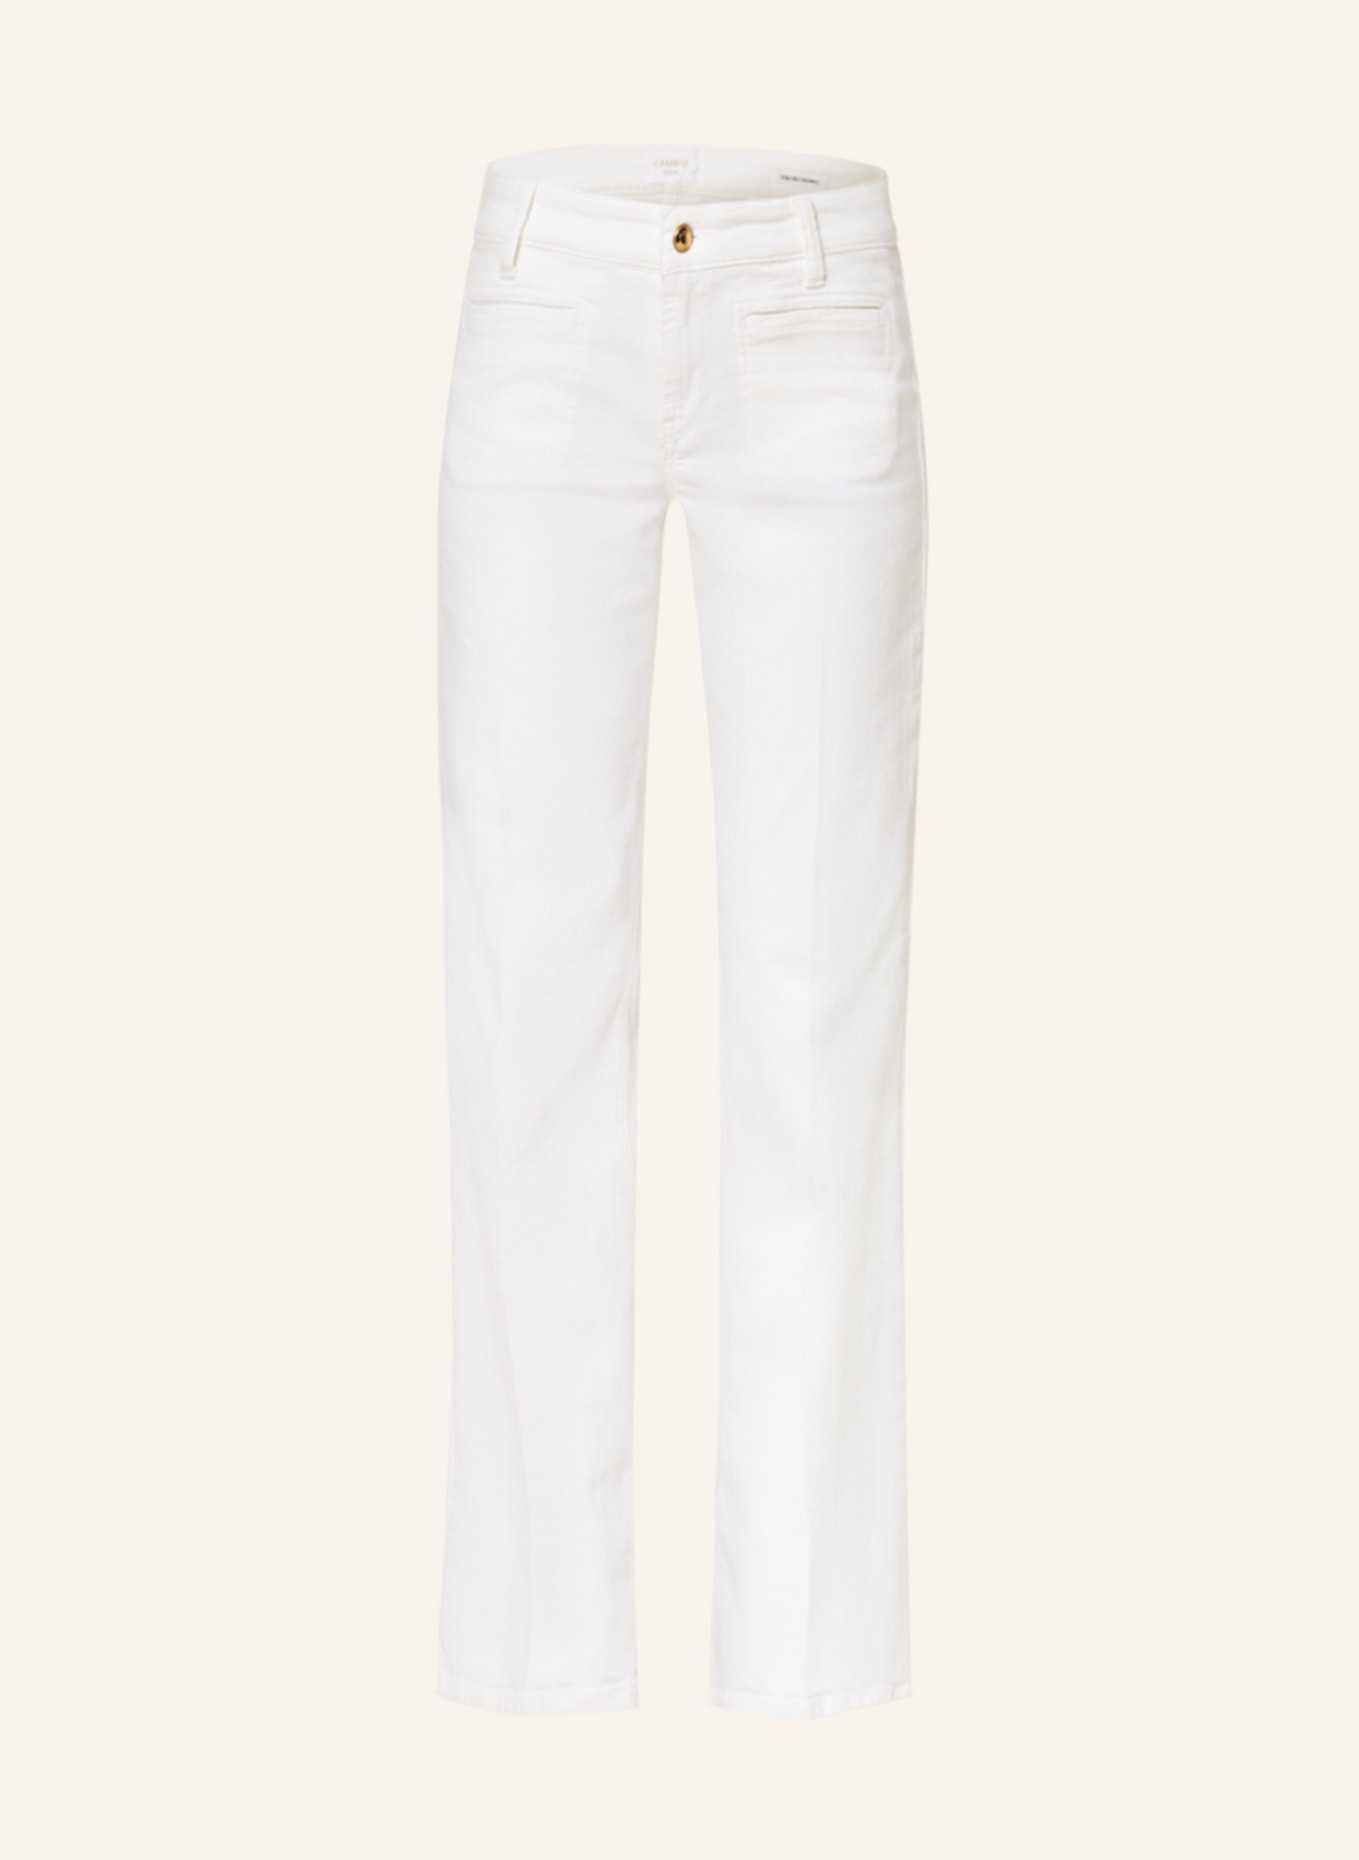 CAMBIO Flared Jeans TESS, Farbe: 5113 pure white stone (Bild 1)